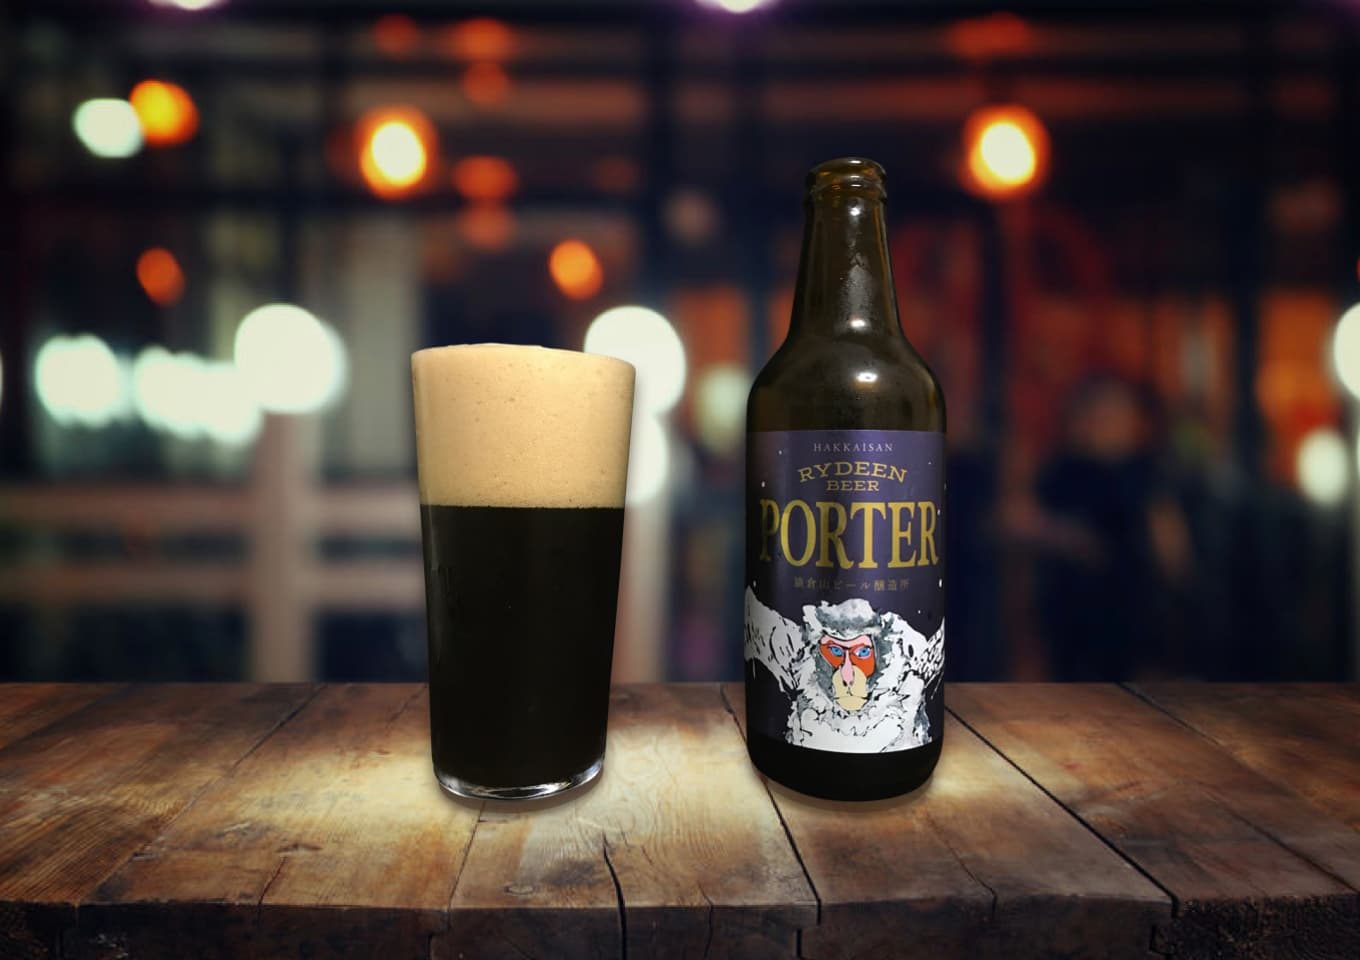 ライディーンビール「ポーター」アイスコーヒー級の飲みやすさの冬季限定黒ビール